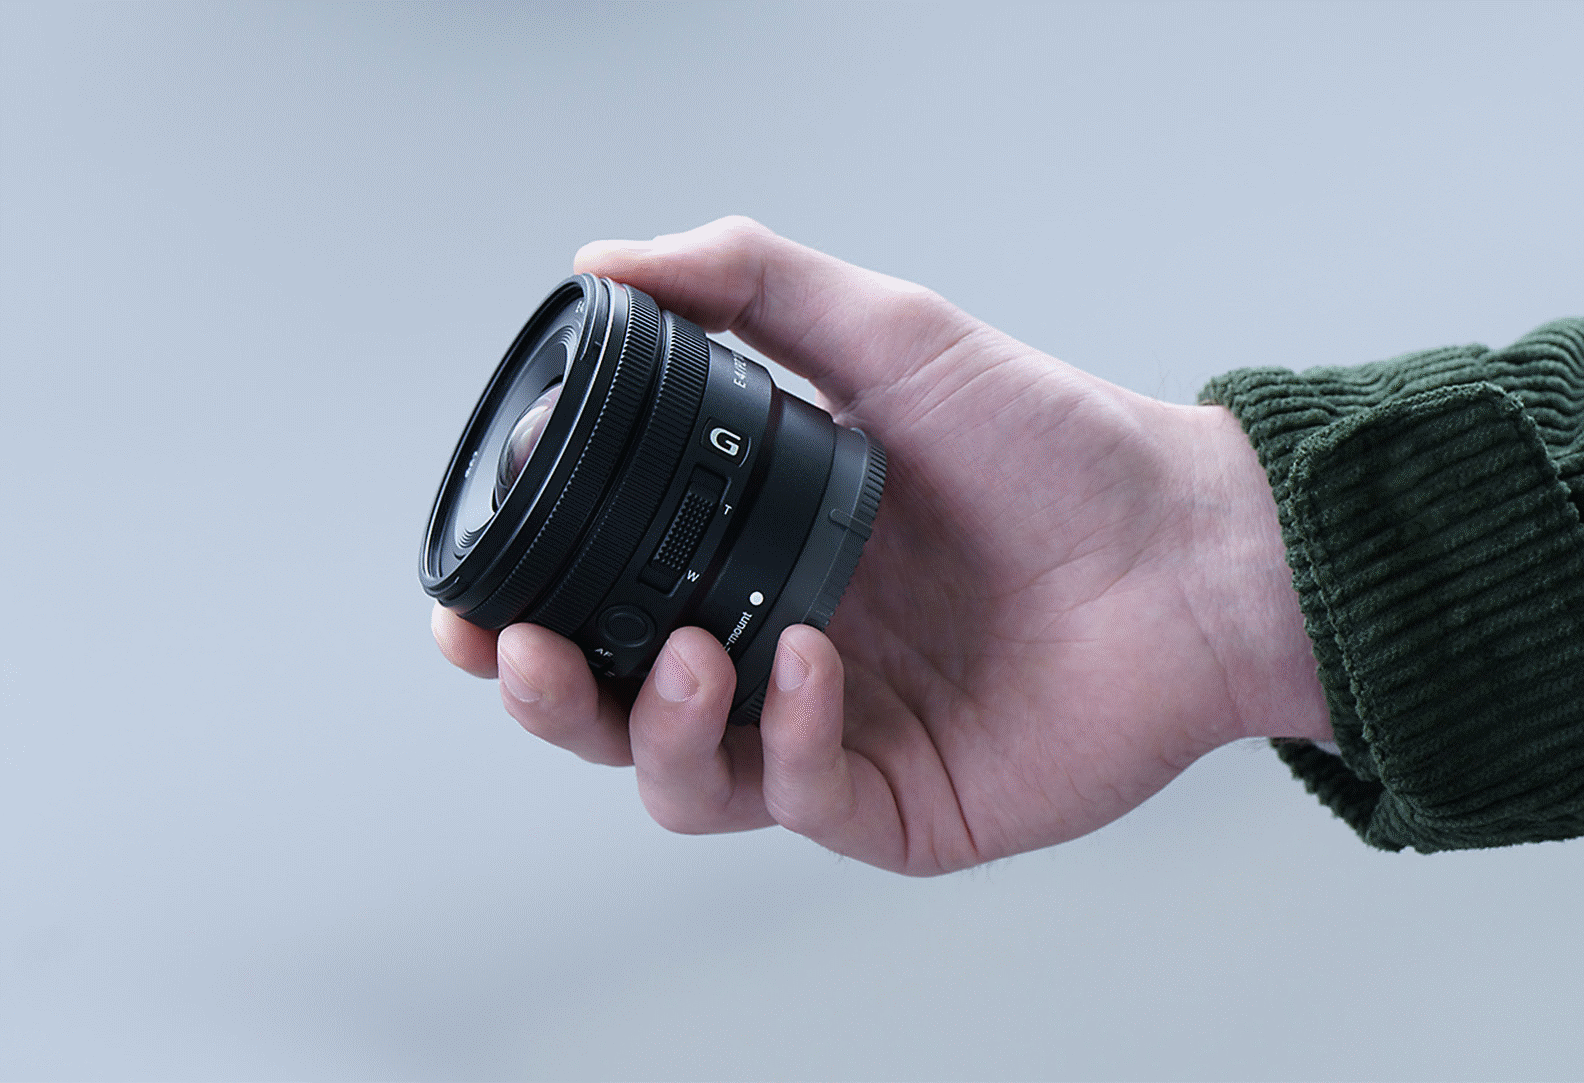 Slika osebe, ki v roki drži E PZ 10-20mm F4 G, kaže, da je objektiv dovolj majhen, da se jim prilega v roko